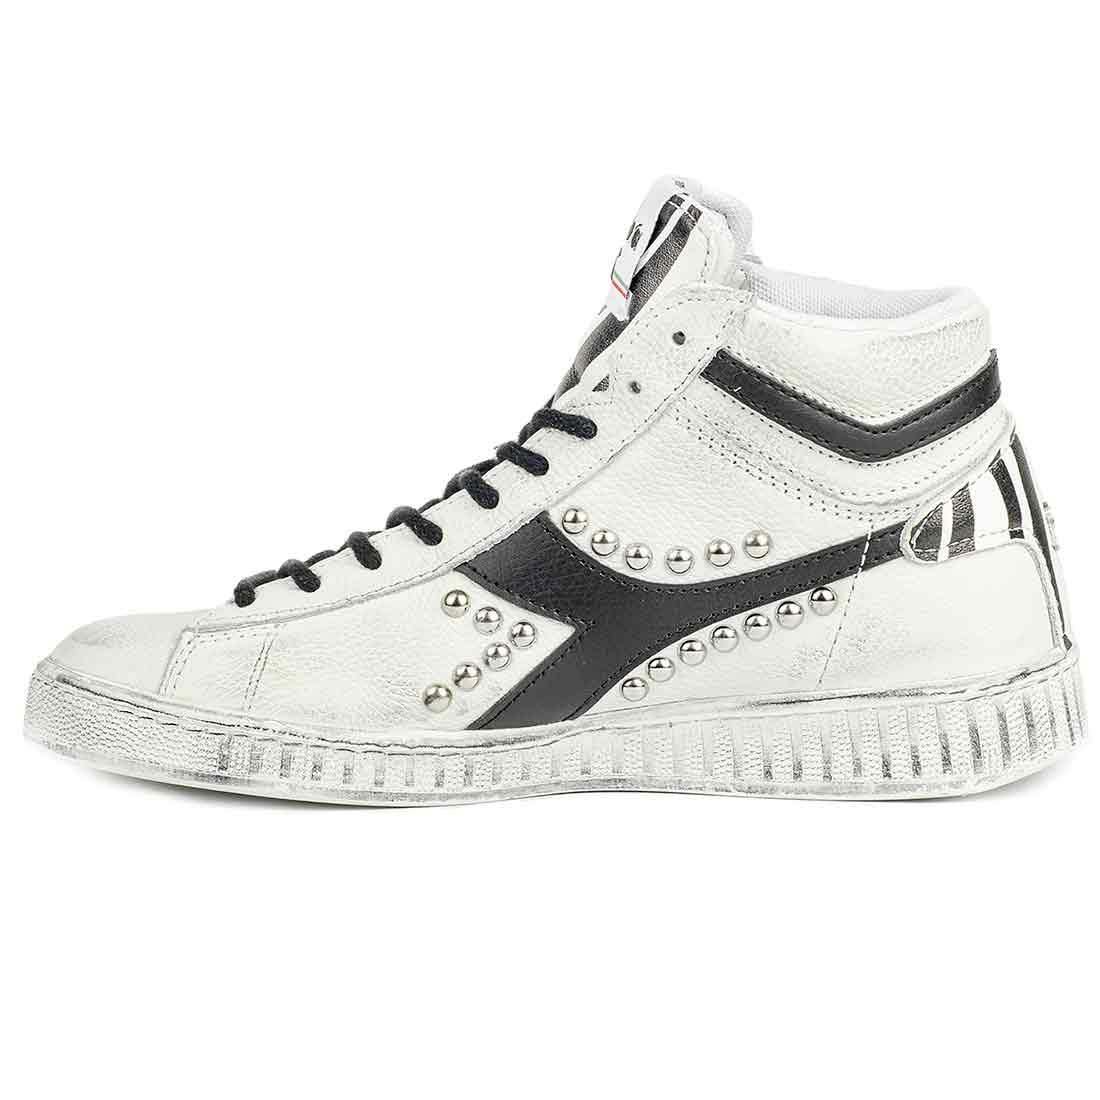 Sneakers diadora zebrate colore bianche e nere con borchie